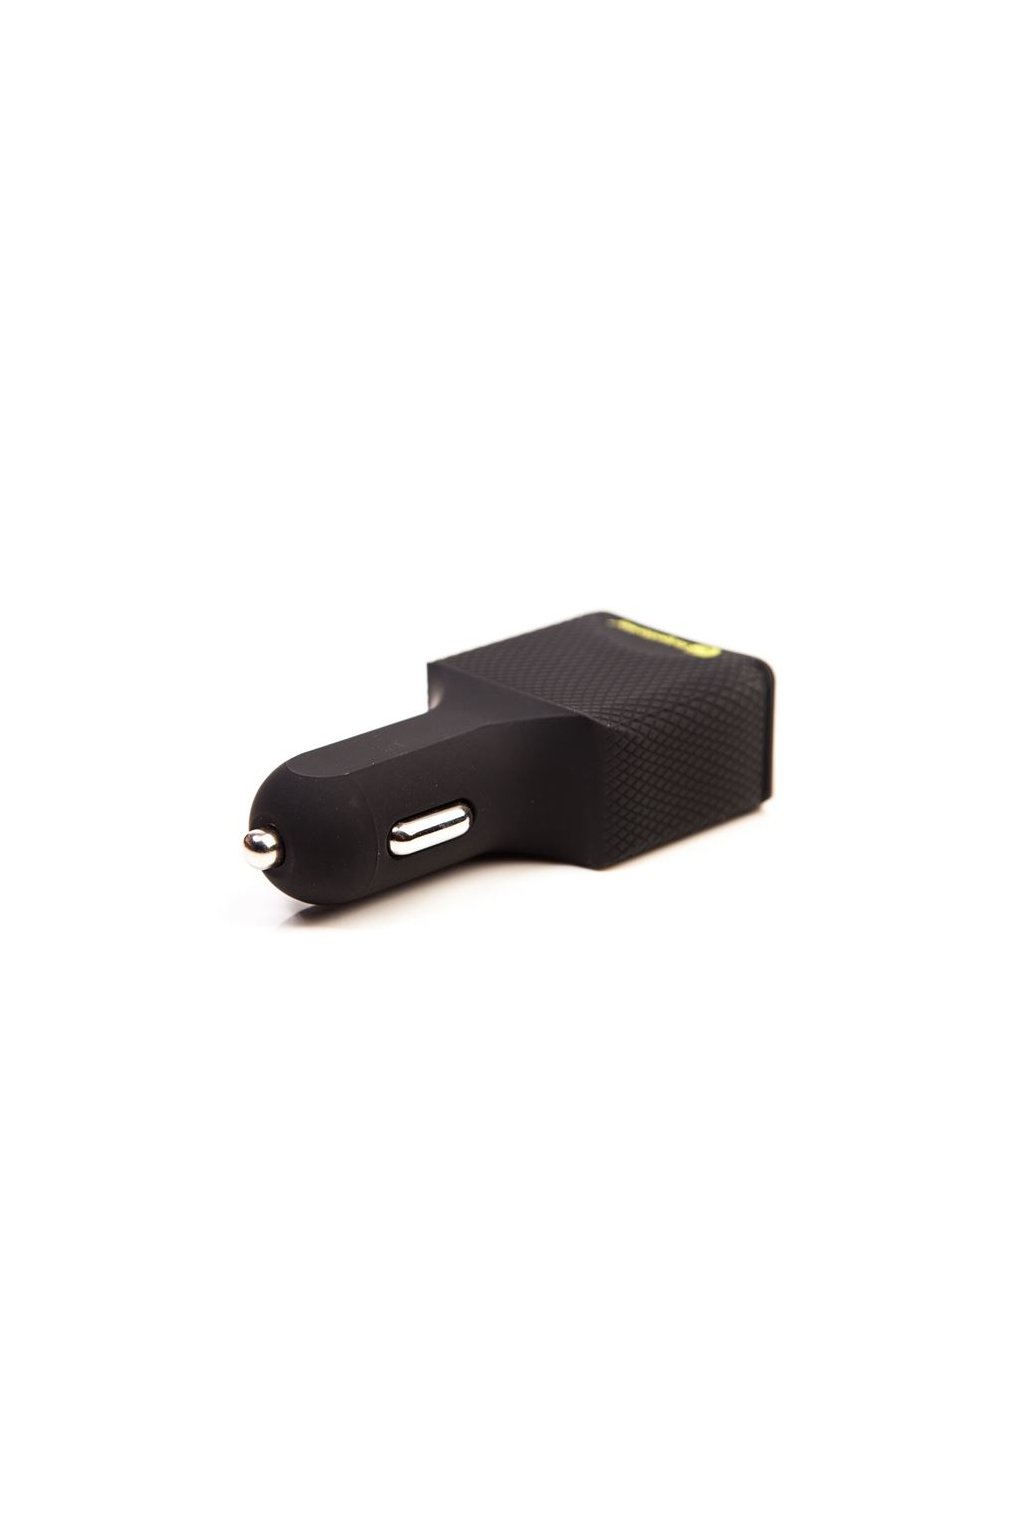 RidgeMonkey: Nabíječka do auta Vault 45W USB-C PD Car Charger